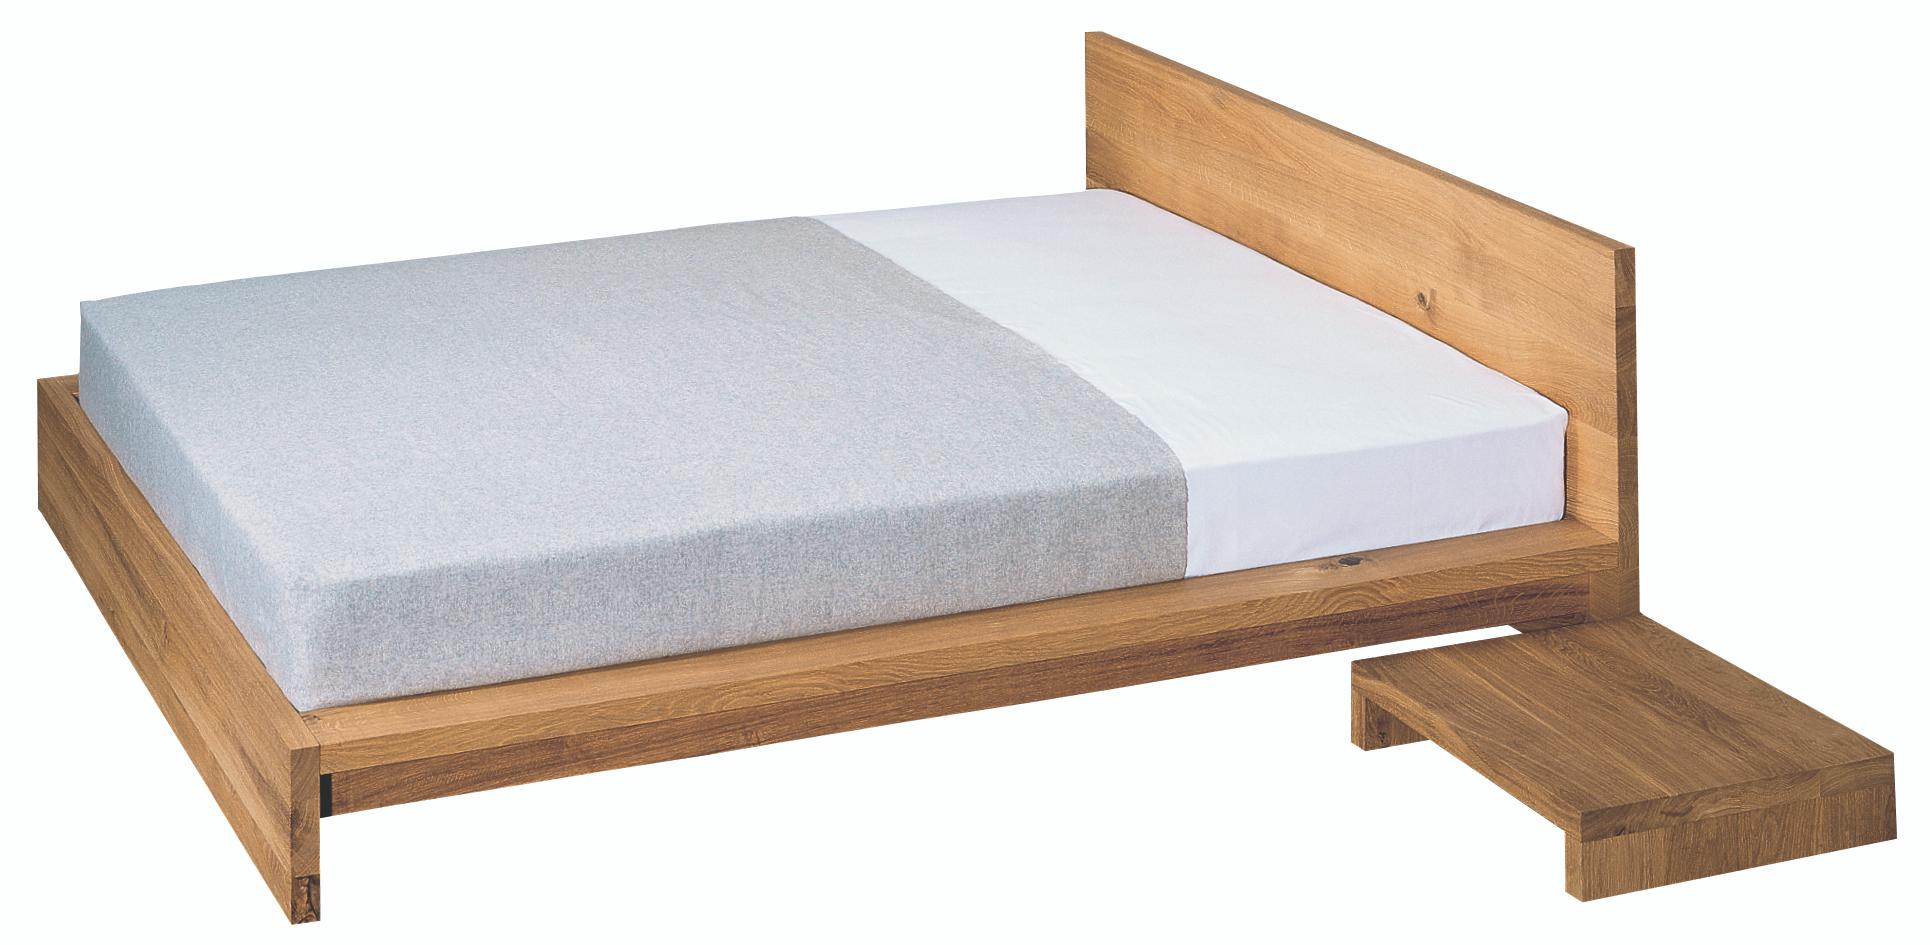 La table de chevet en bois massif Max persuade par son design simple et s'intègre parfaitement dans différents environnements. Il se combine bien avec le lit MO.
 
Détails : Fabriqué en bois massif de 40 MM (1 5/8 POUCE). Parfaitement combiné avec